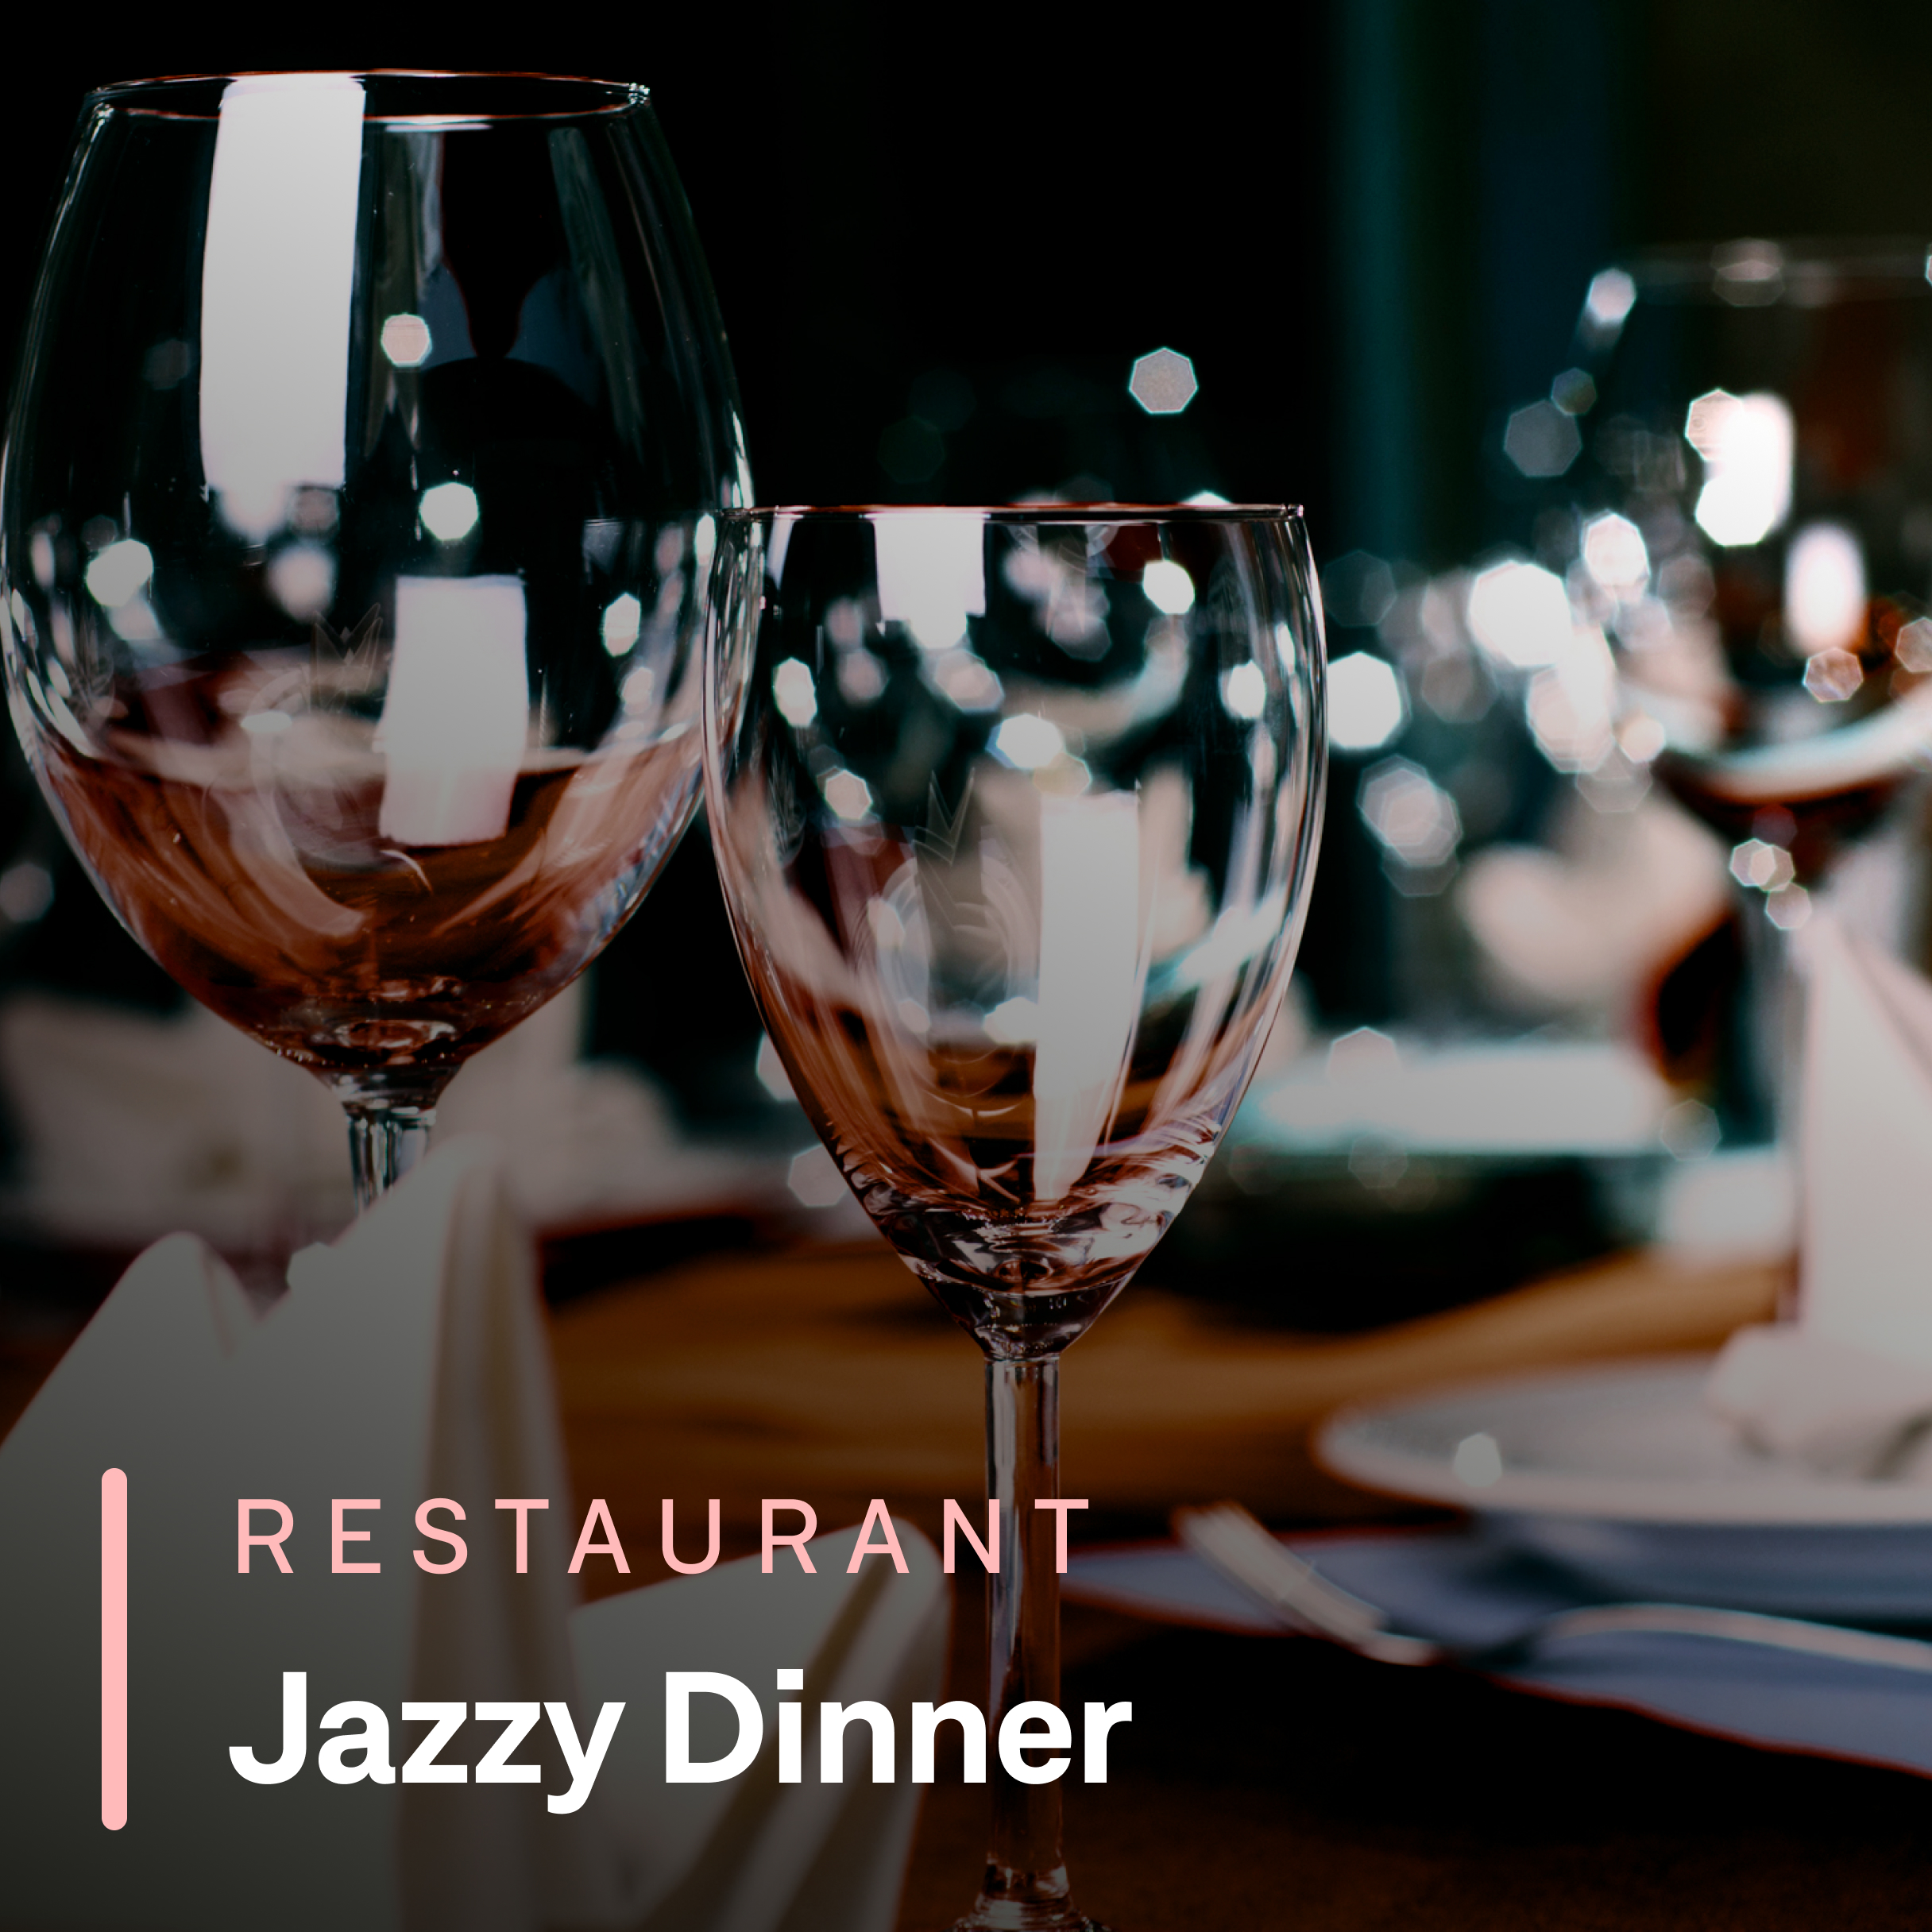 Fine dining sushi restaurants playlist Jazzy Dinner